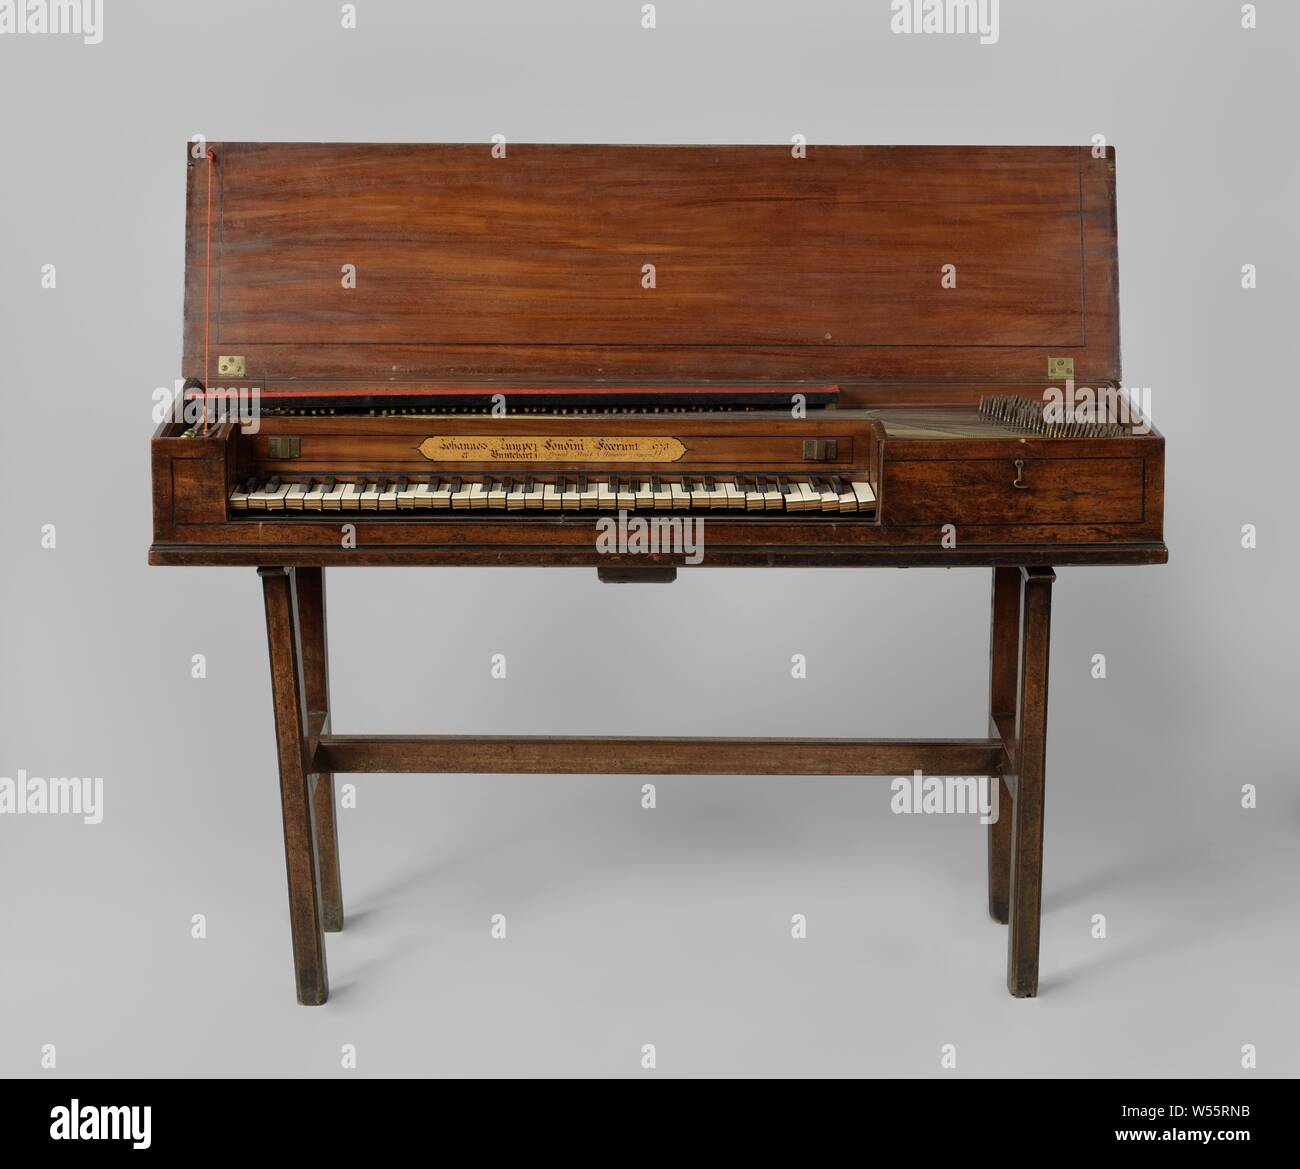 Piano piano de mesa, mesa de Zumpe & Buntebart (mencionado en la película), Londres, 1773, ébano (madera), marfil, hierro (metal), latón (aleación), caoba (madera), cuero, h 76,0 cm × W